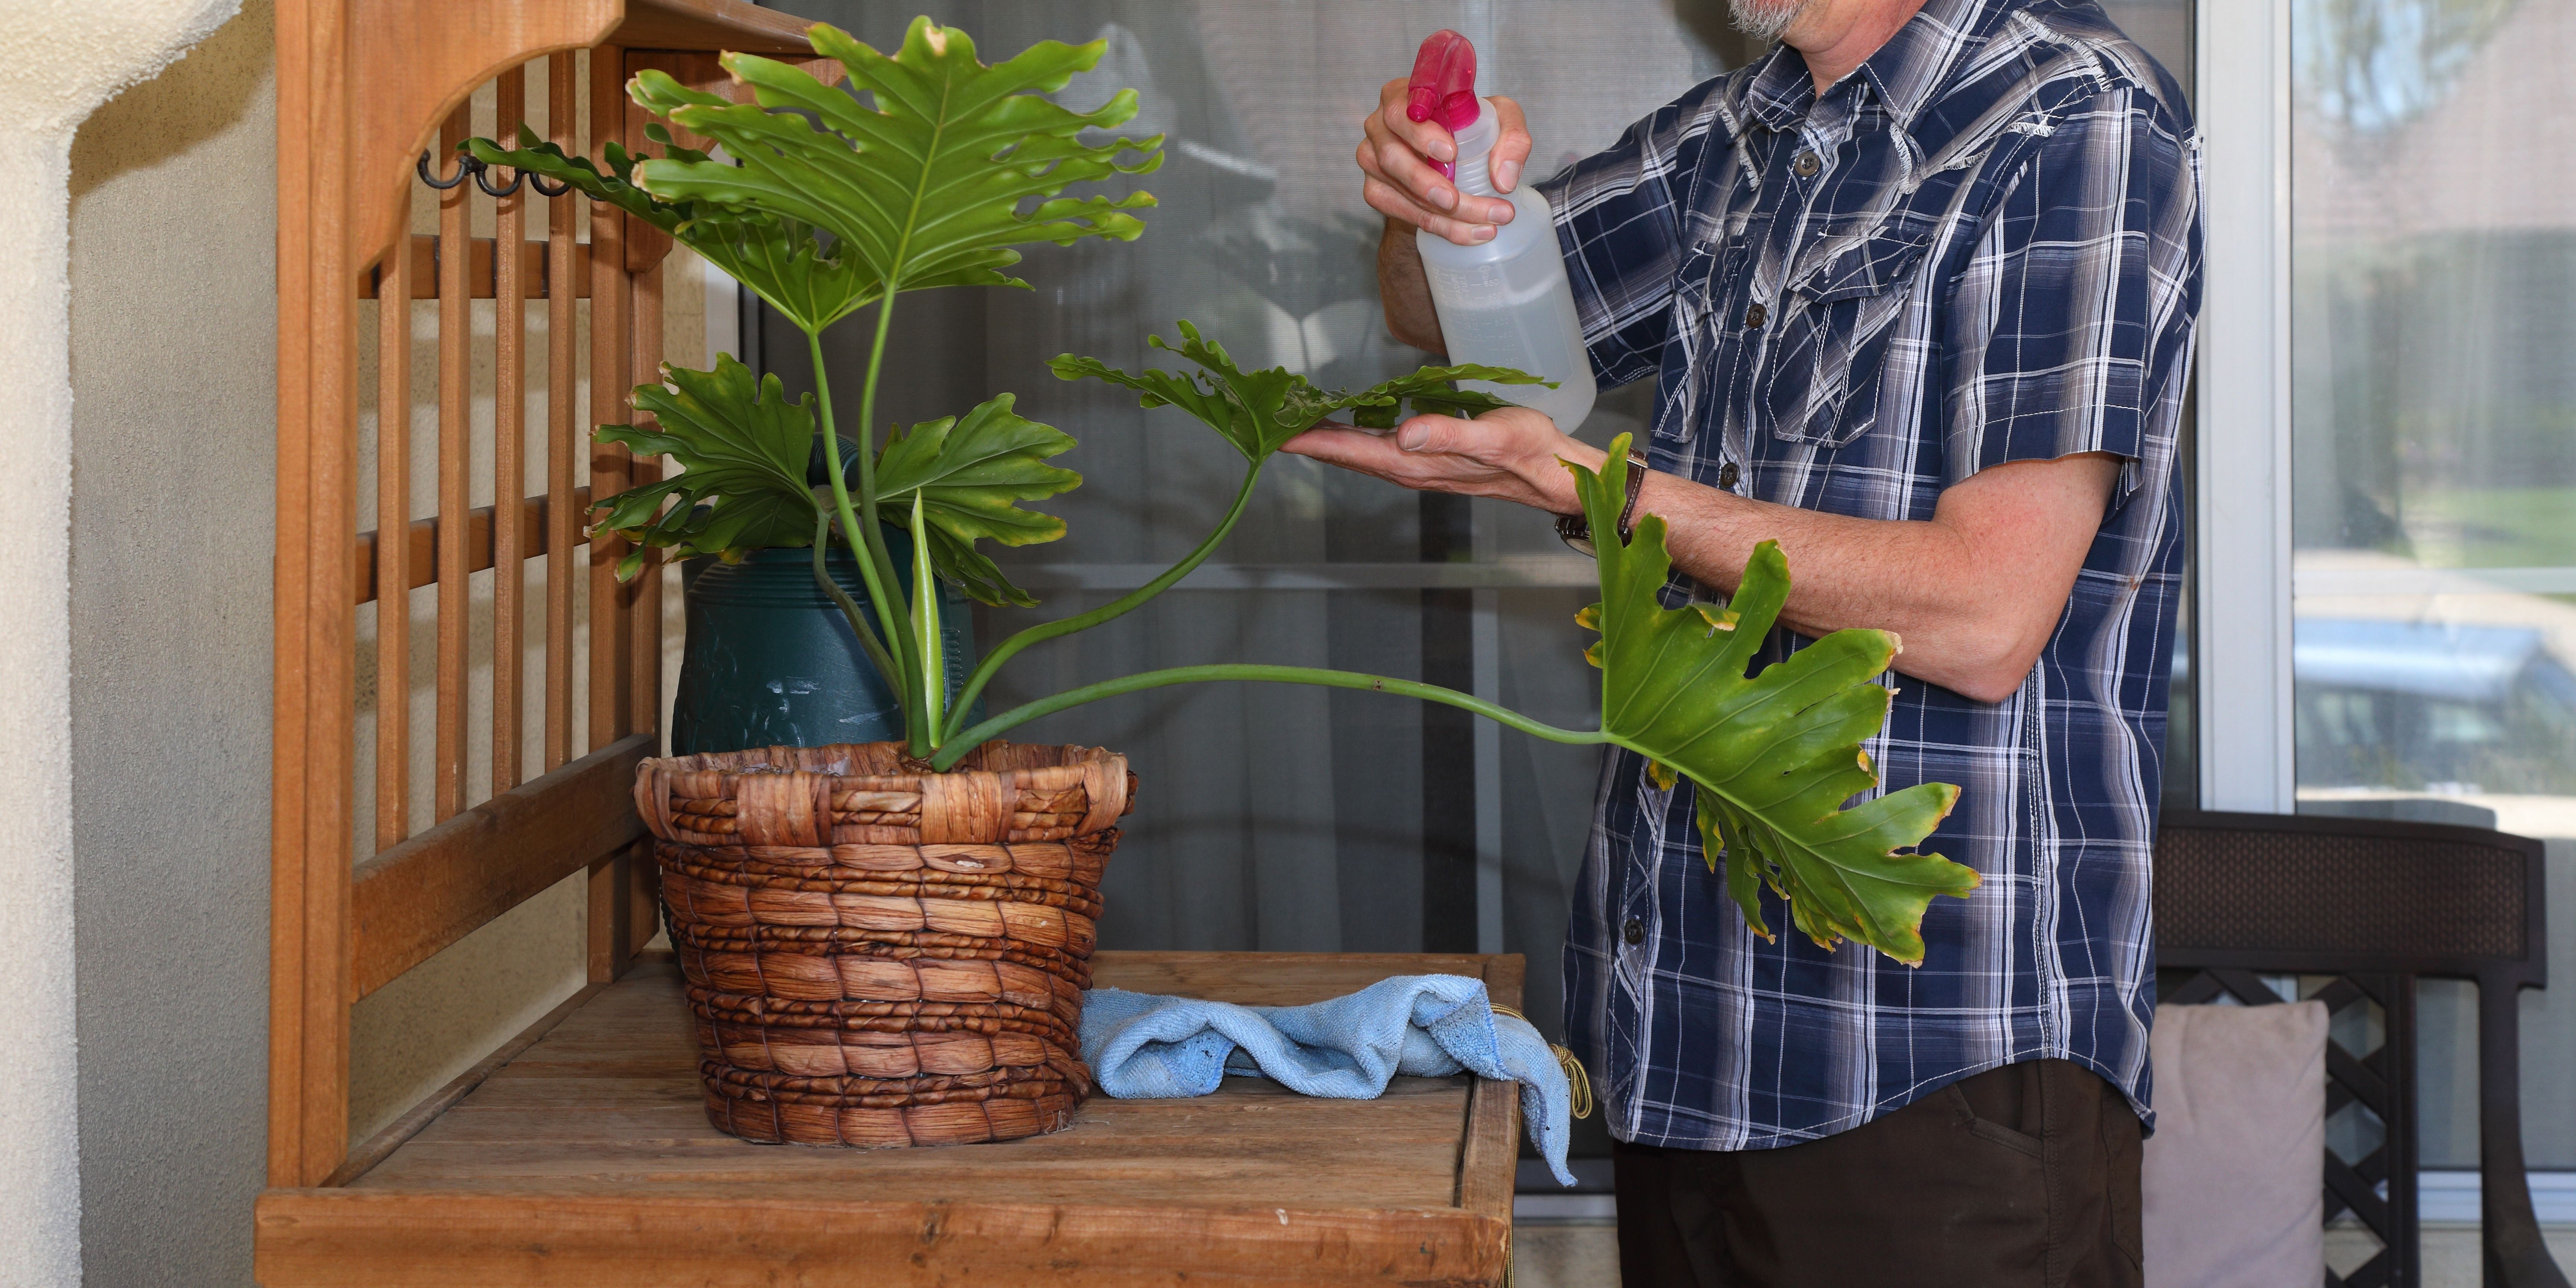 Domowe sposoby na wełnowca - czyszczenie liści roztworem z mydła i wody